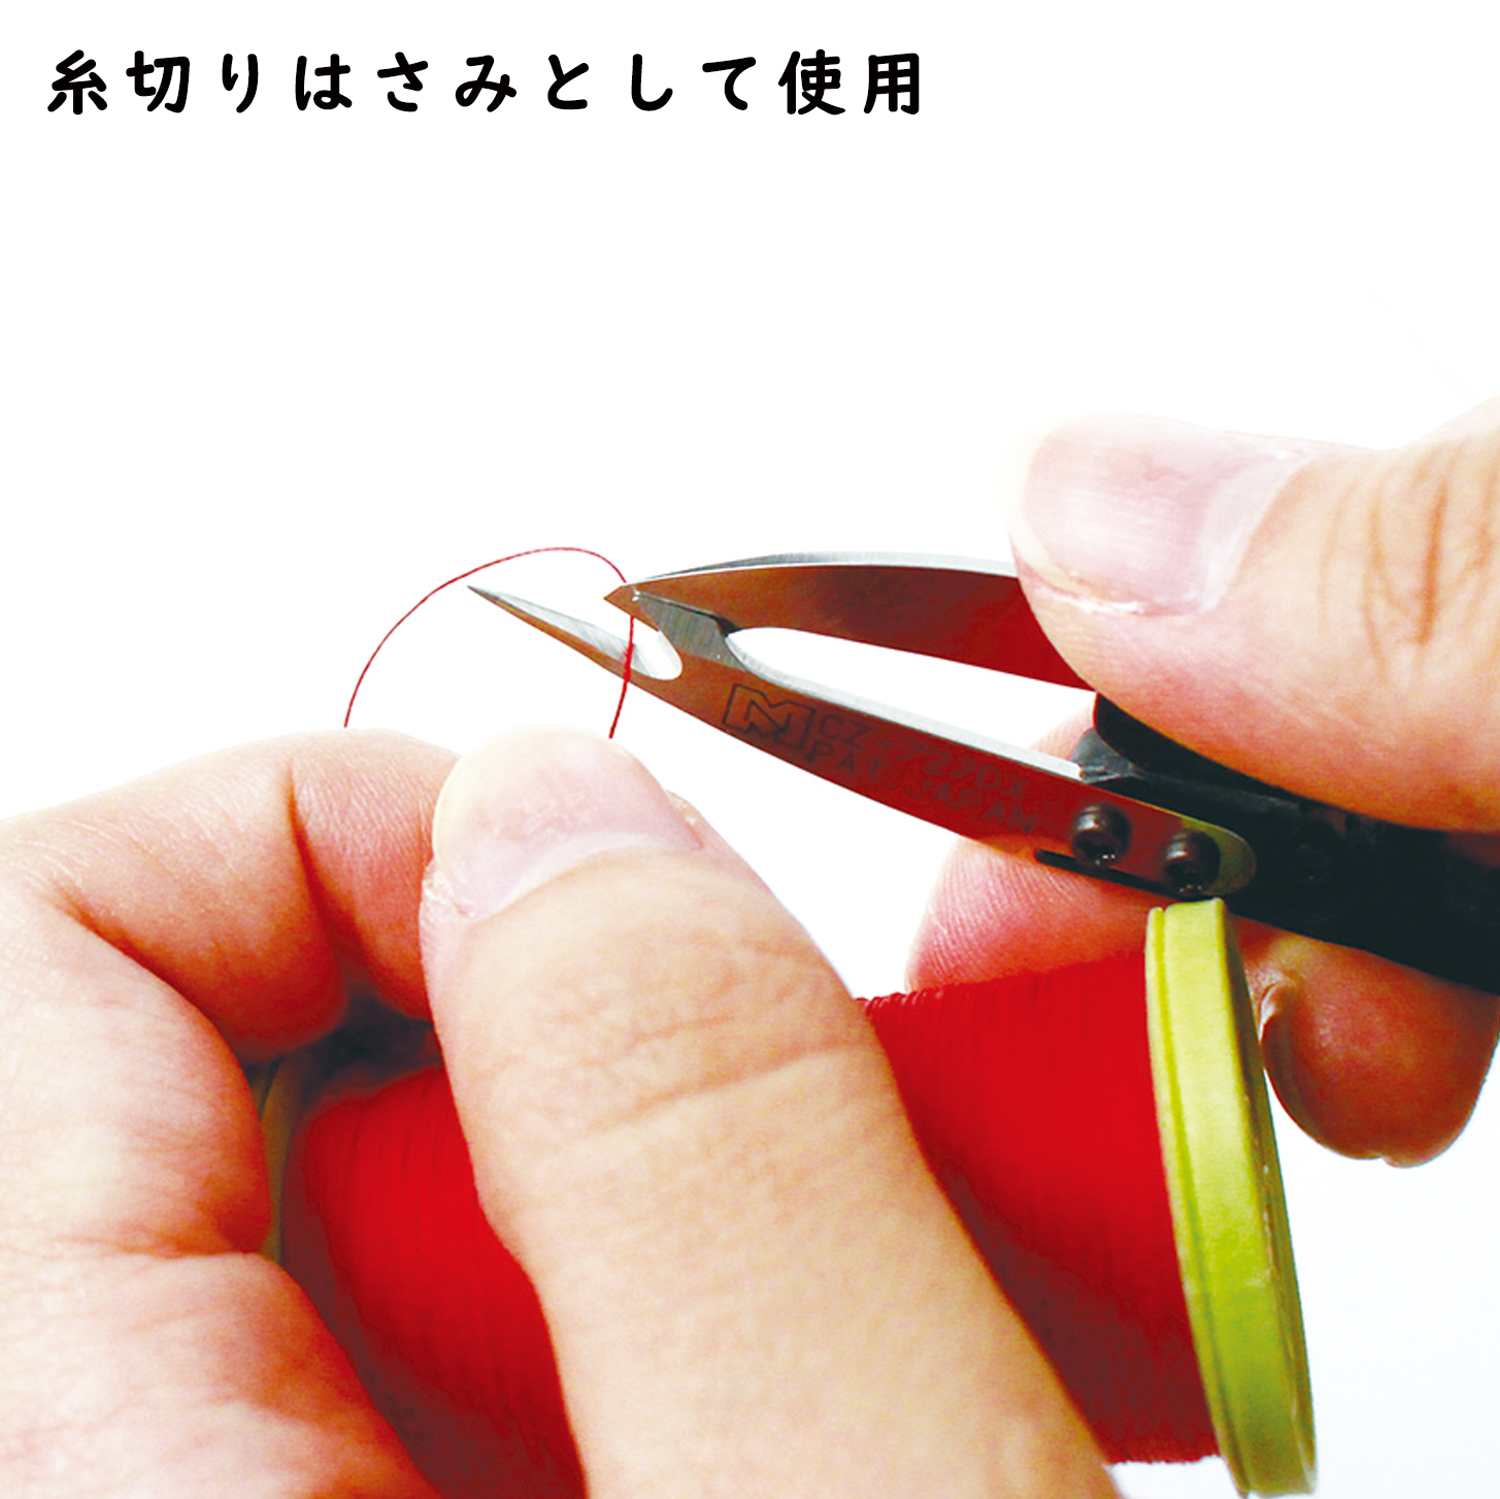 NI-02427 リッパー付き糸切はさみ 1本入(袋)「手芸材料の卸売りサイト 